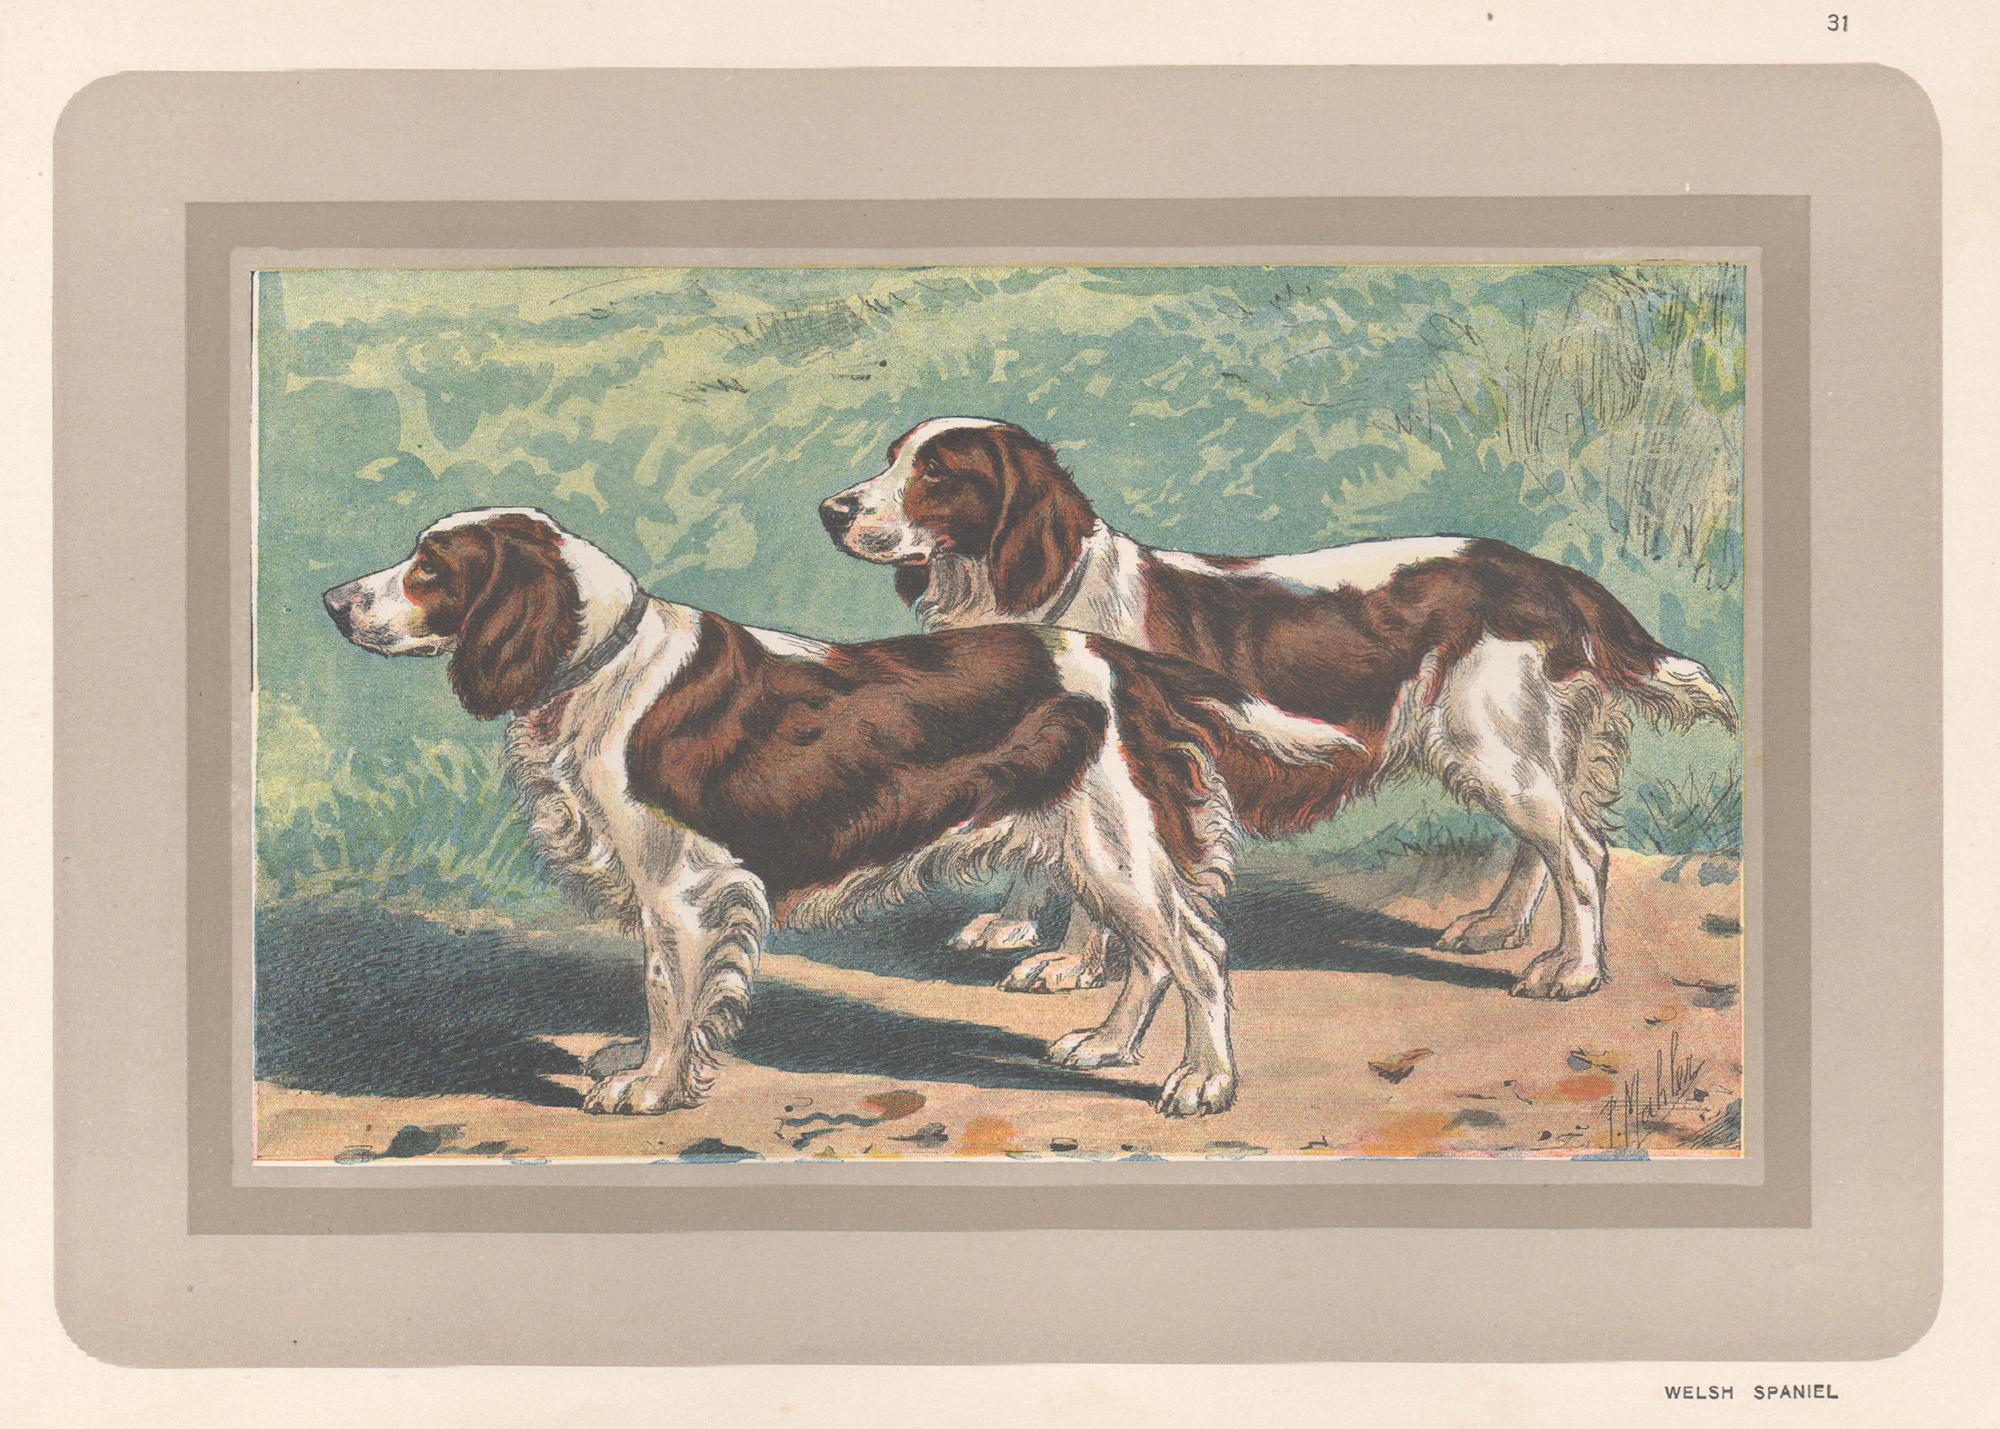 Animal Print P. Mahler - Impression chromolithographie d'un épagneul gallois, chien de chasse, années 1930